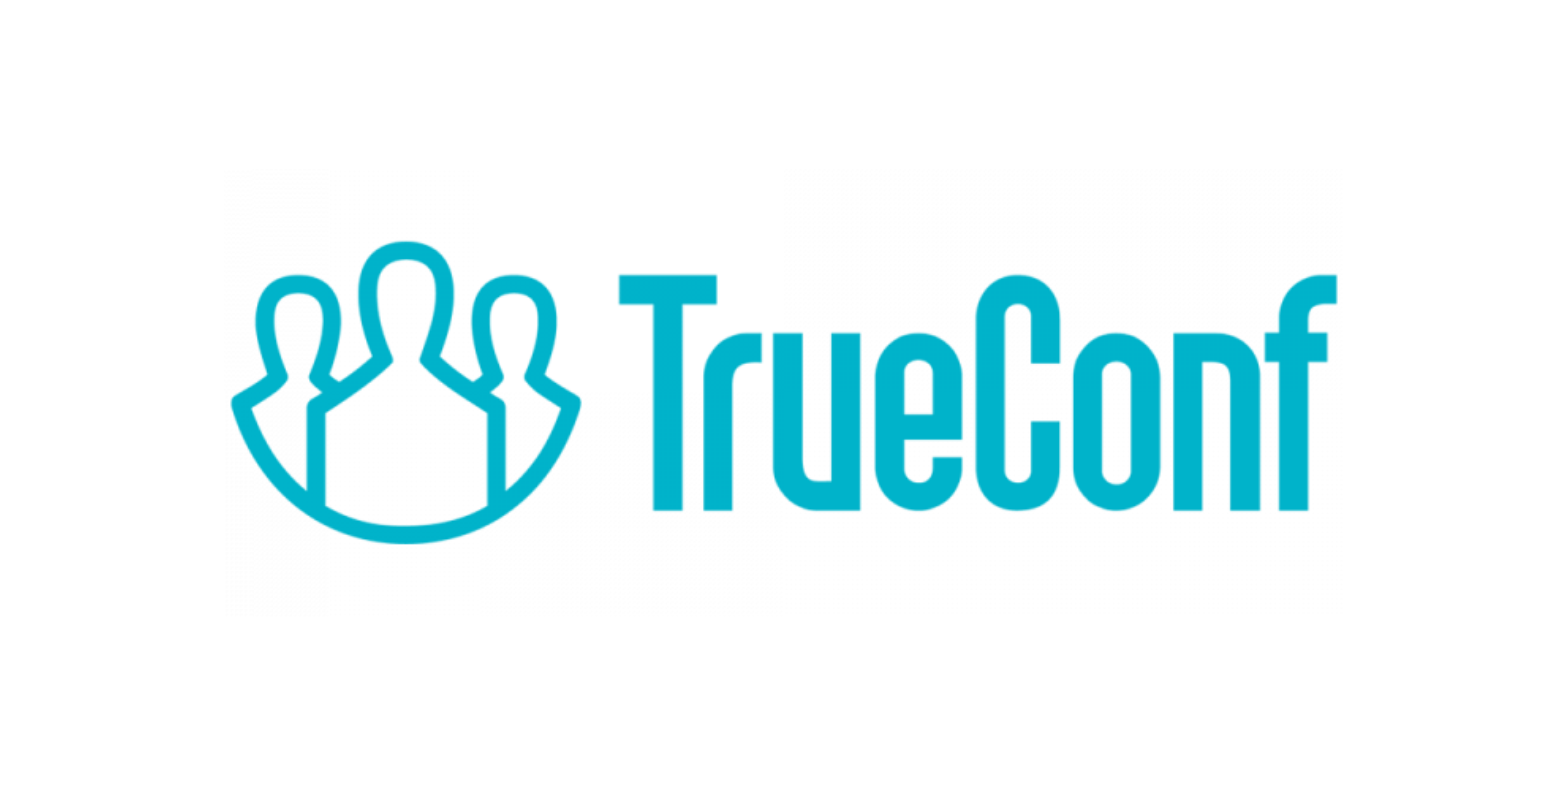 TrueConf Server Техническая поддержка на 1 год расширенная 168-199 ПРО-пользователей